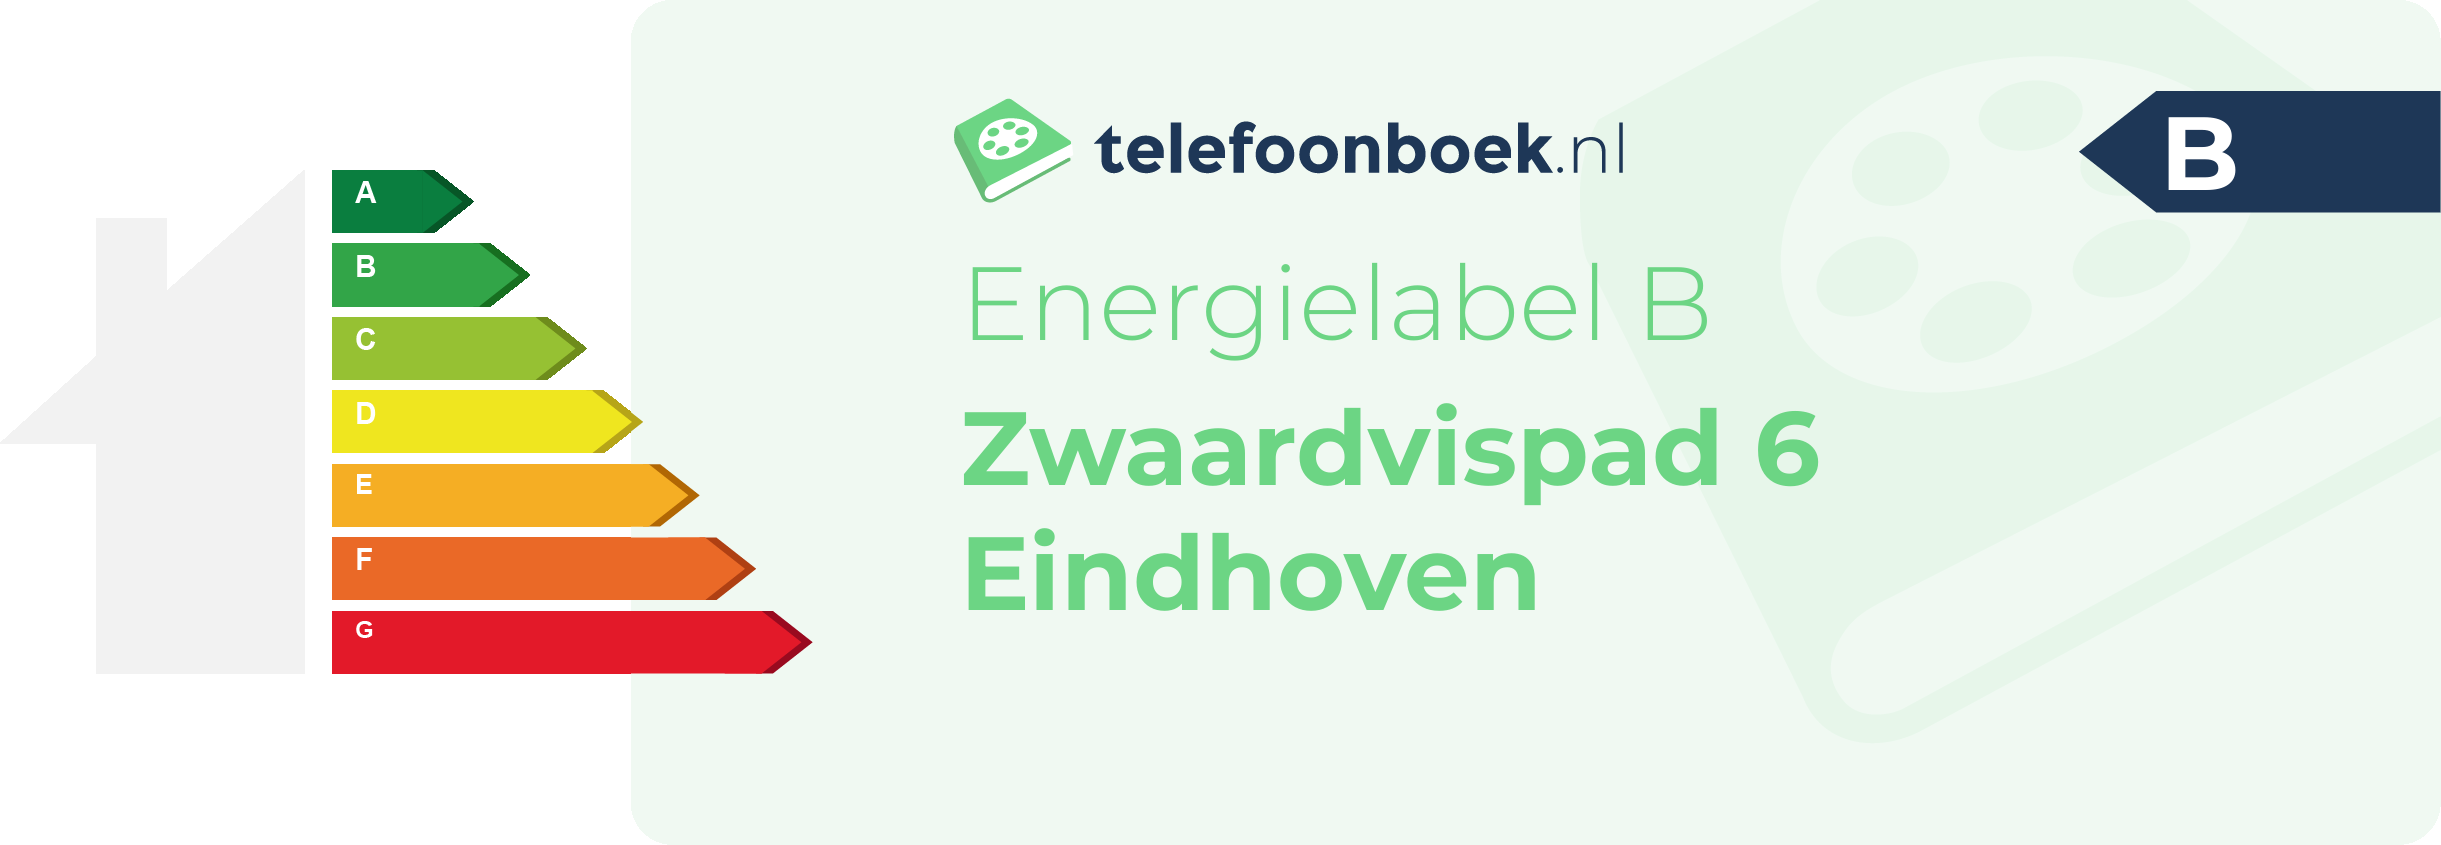 Energielabel Zwaardvispad 6 Eindhoven